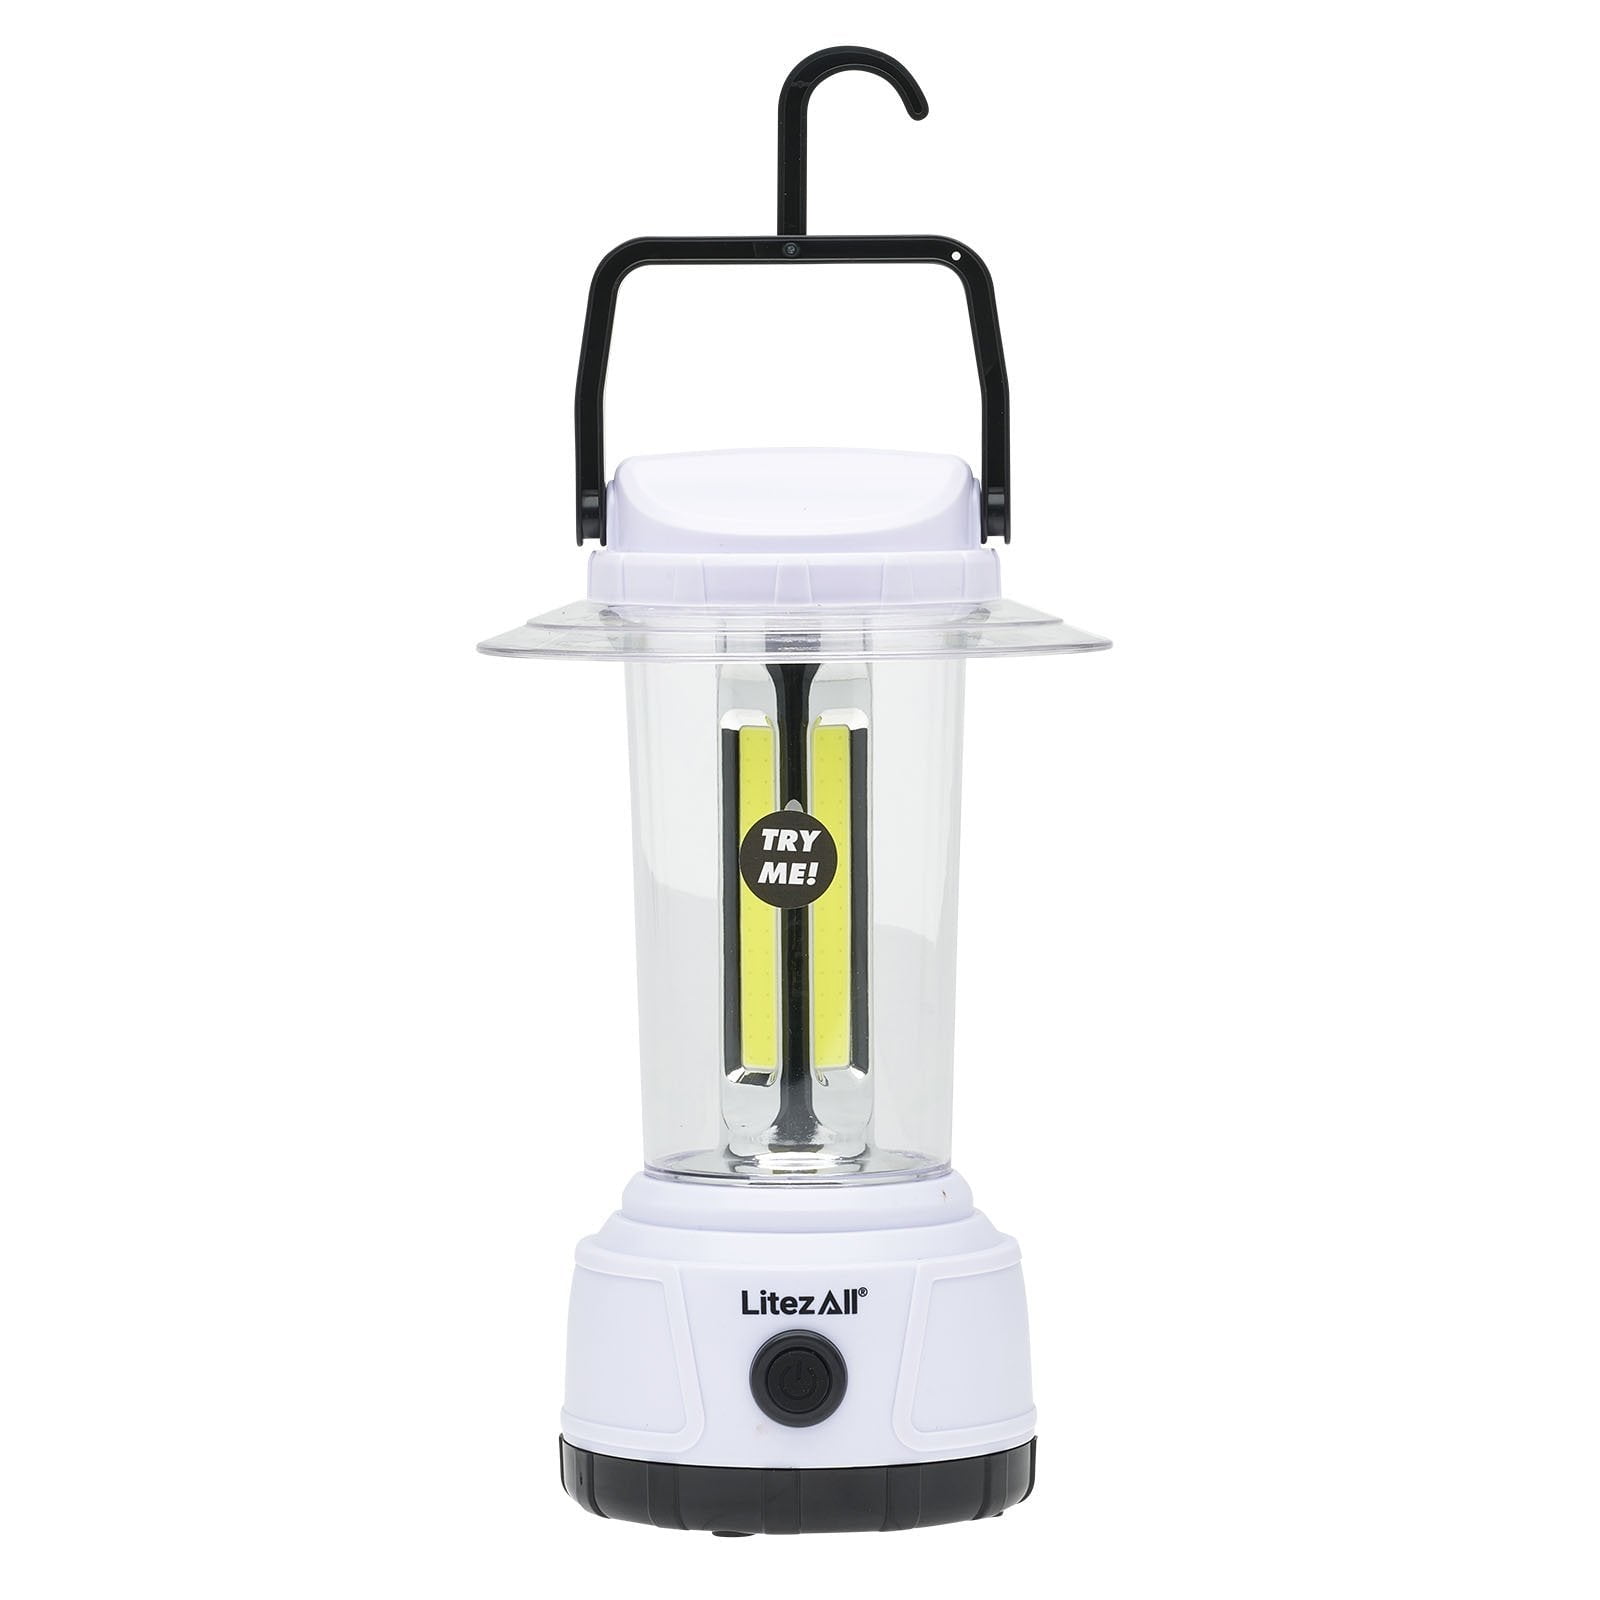 2000 Lumen Rechargeable Waterproof LED Lantern/Battery Bank